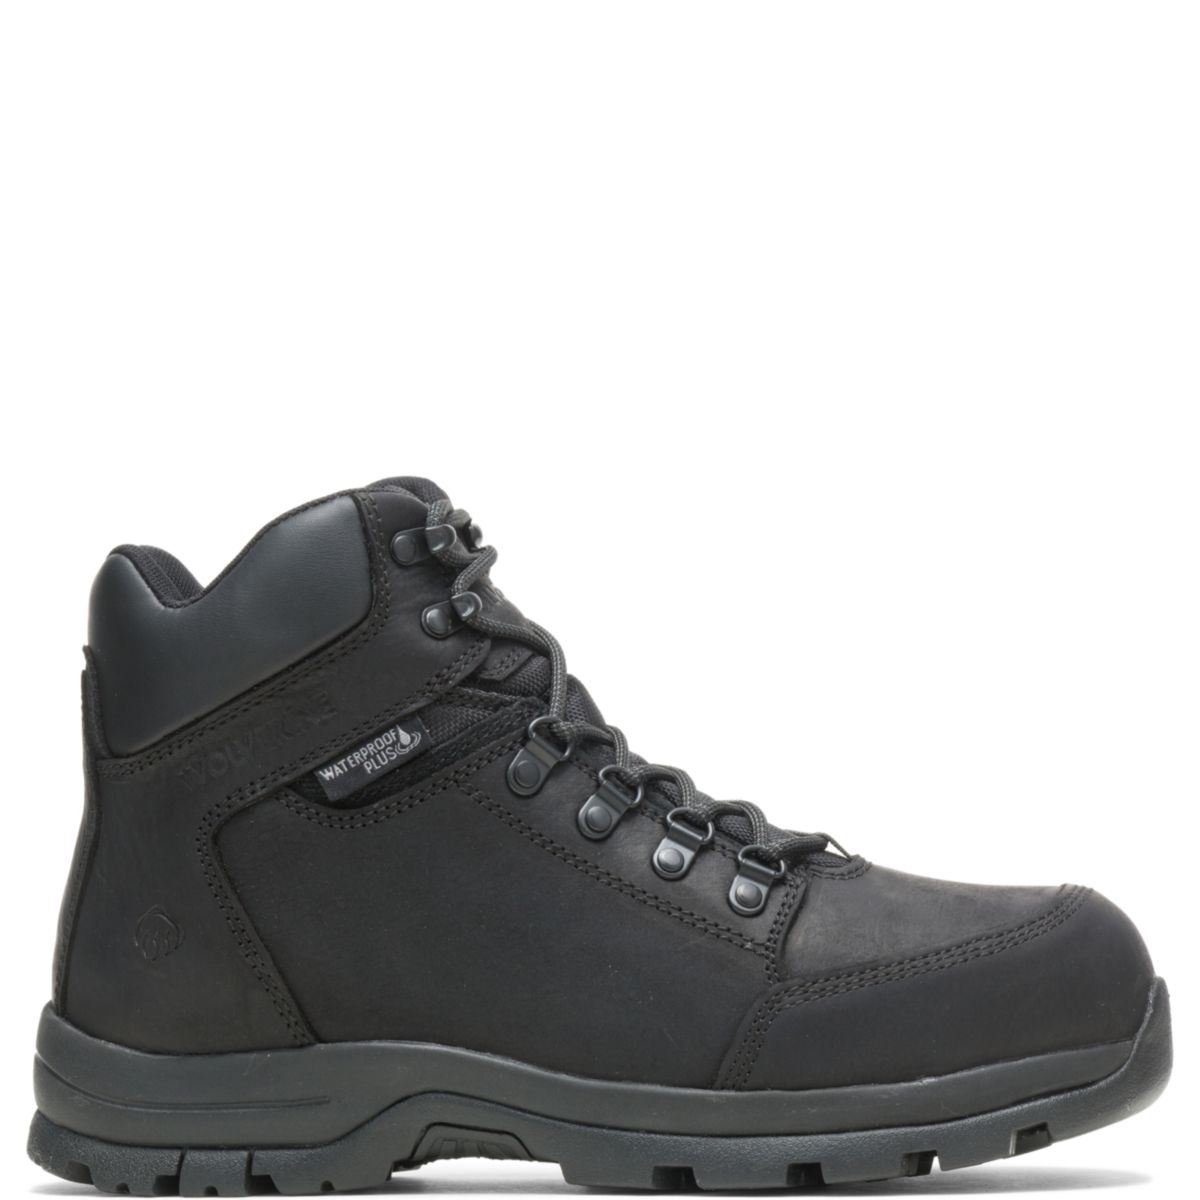 WOLVERINE Men's Grayson Steel Toe Waterproof Work Boot Black - W211042 BLACK - BLACK, 13